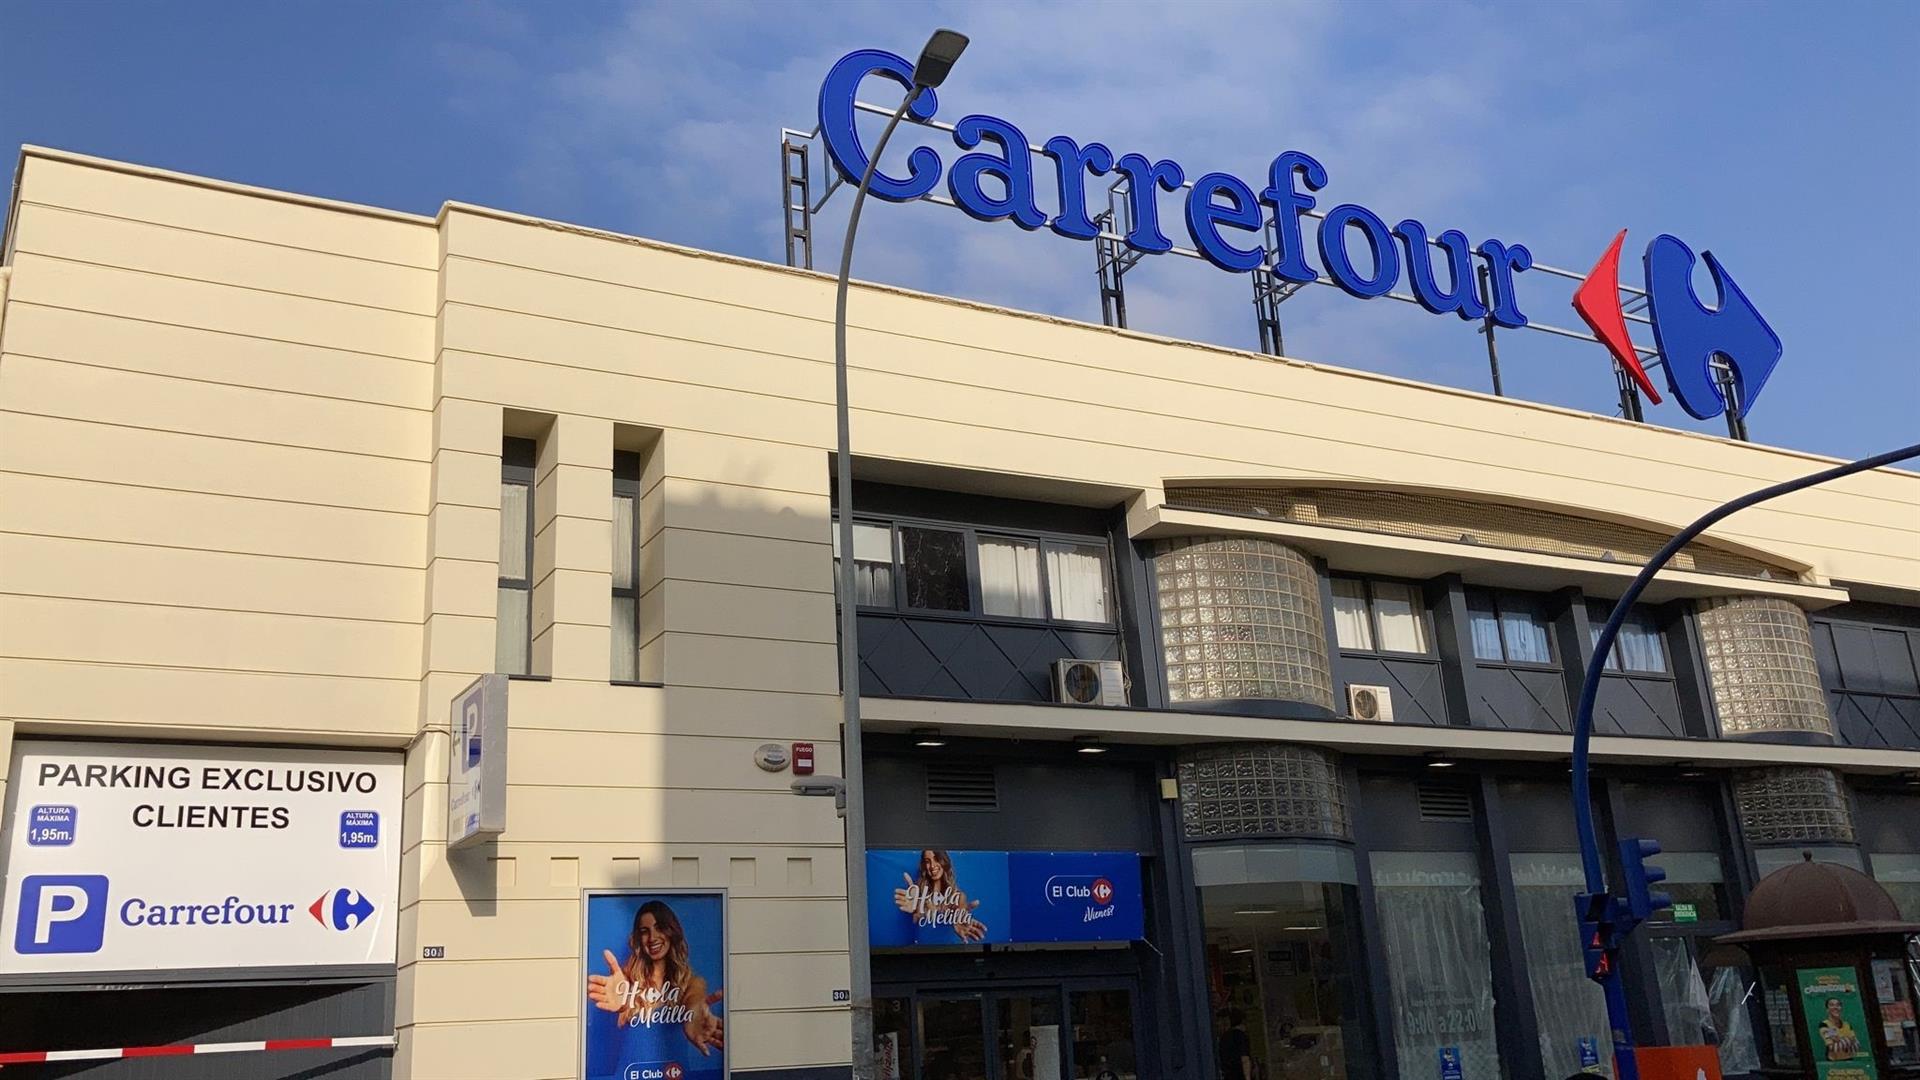 La taula de jardí més barata costa 24 euros a Carrefour